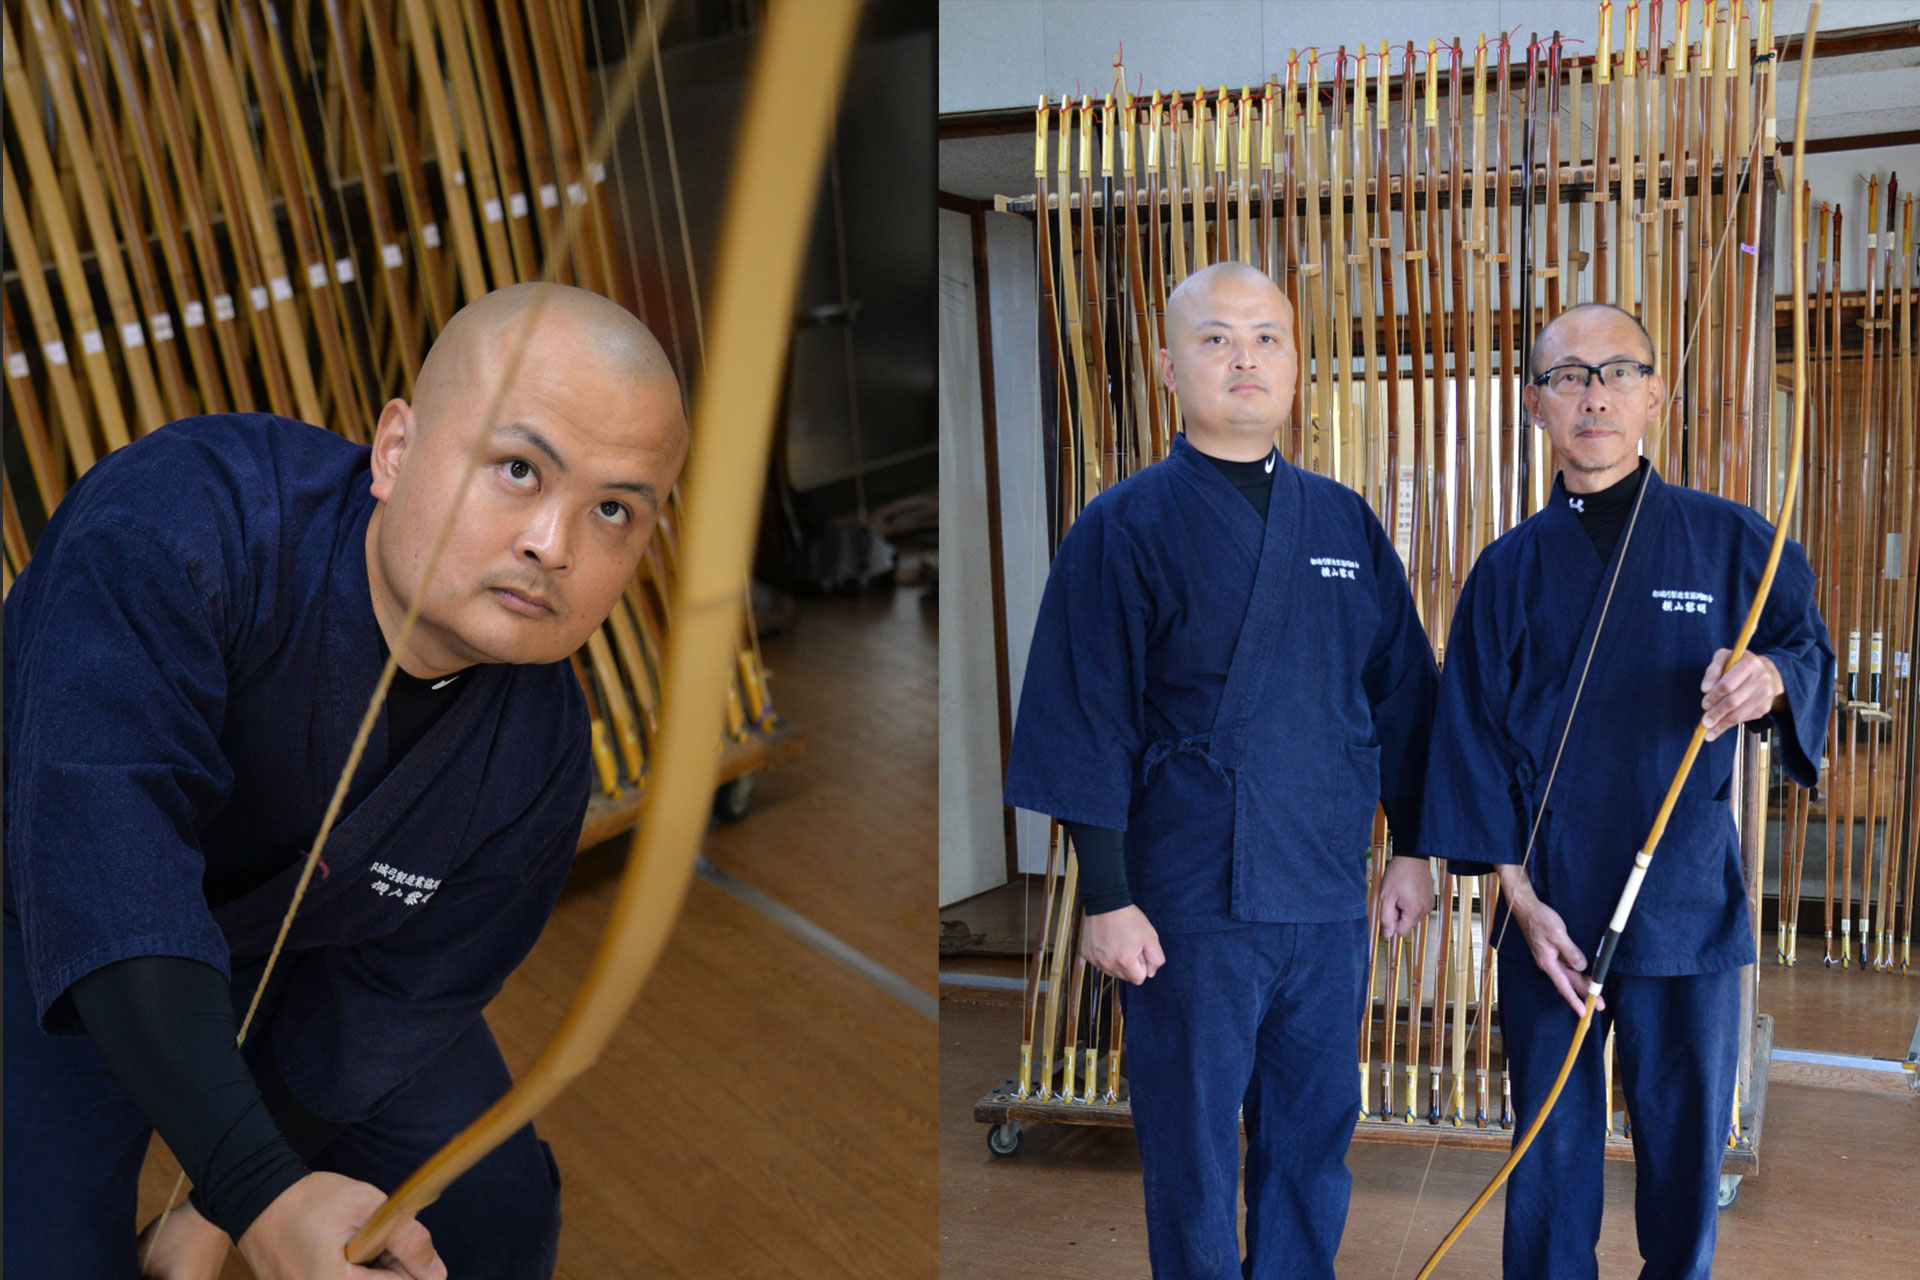 「素材と心通わせ技磨く」 宮崎の「一刻者」伝統工芸の技を守り受け継ぐ職人の物語